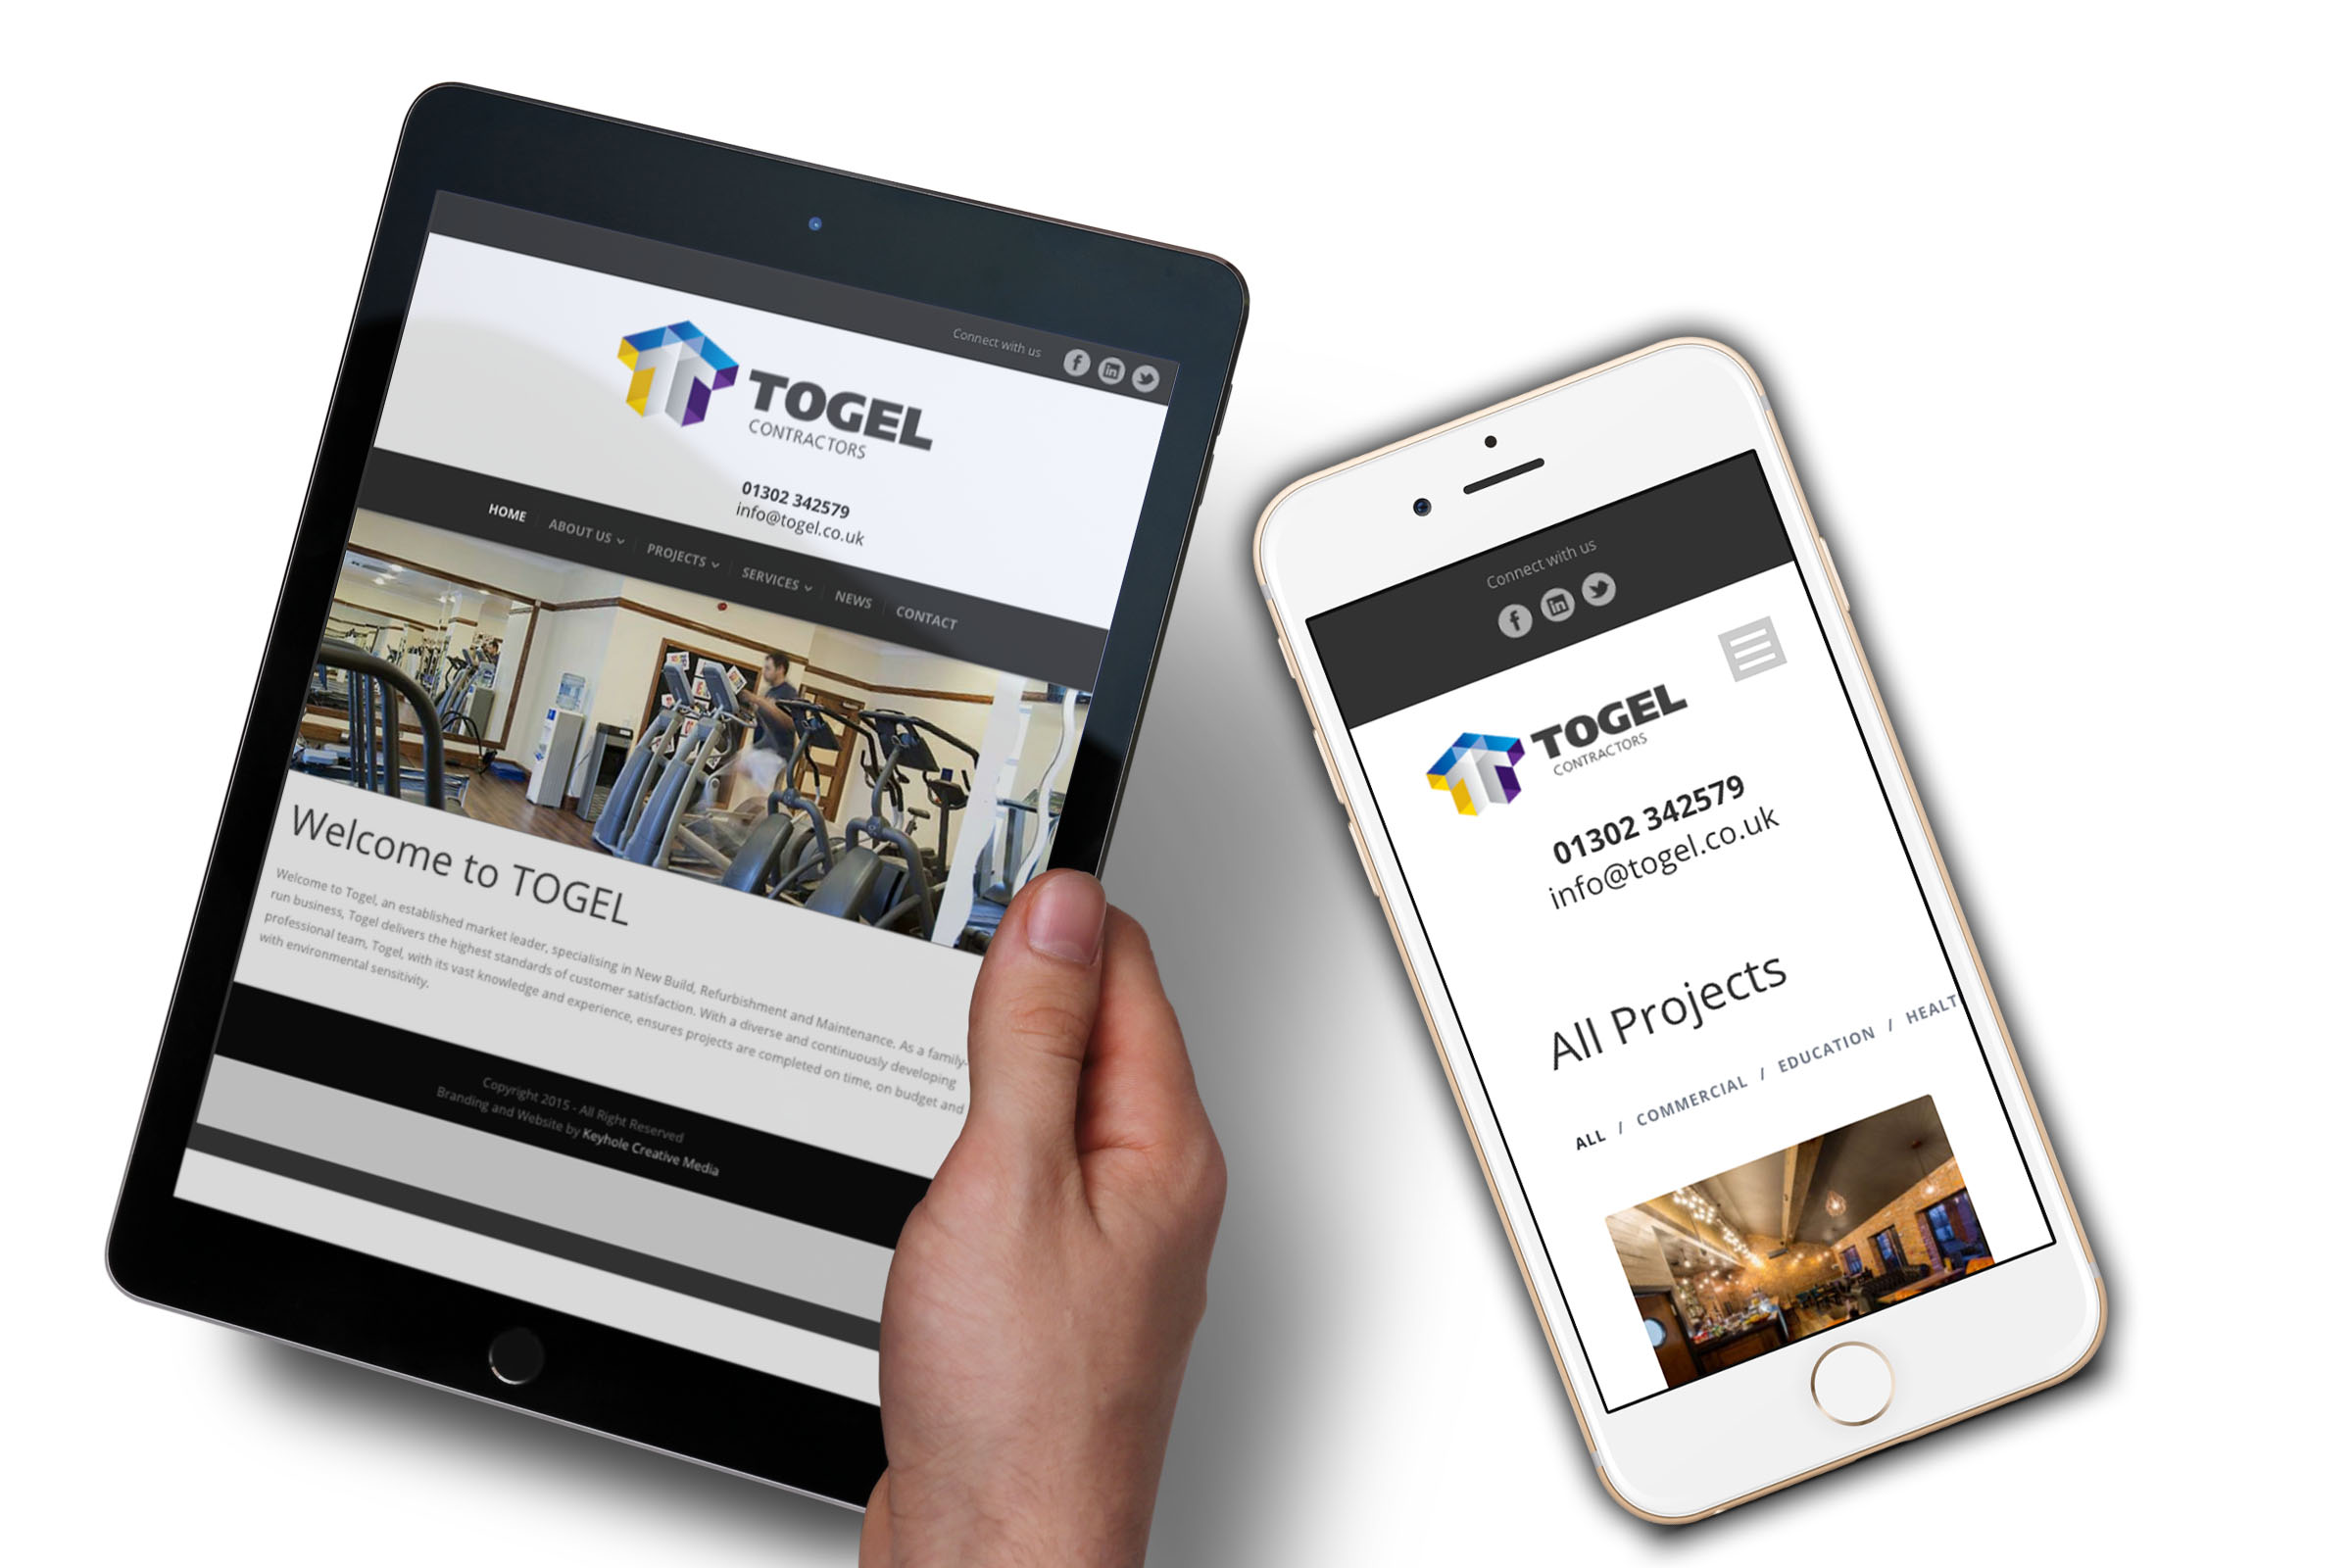 Togel - Website Design Display - Tablet & Mobile